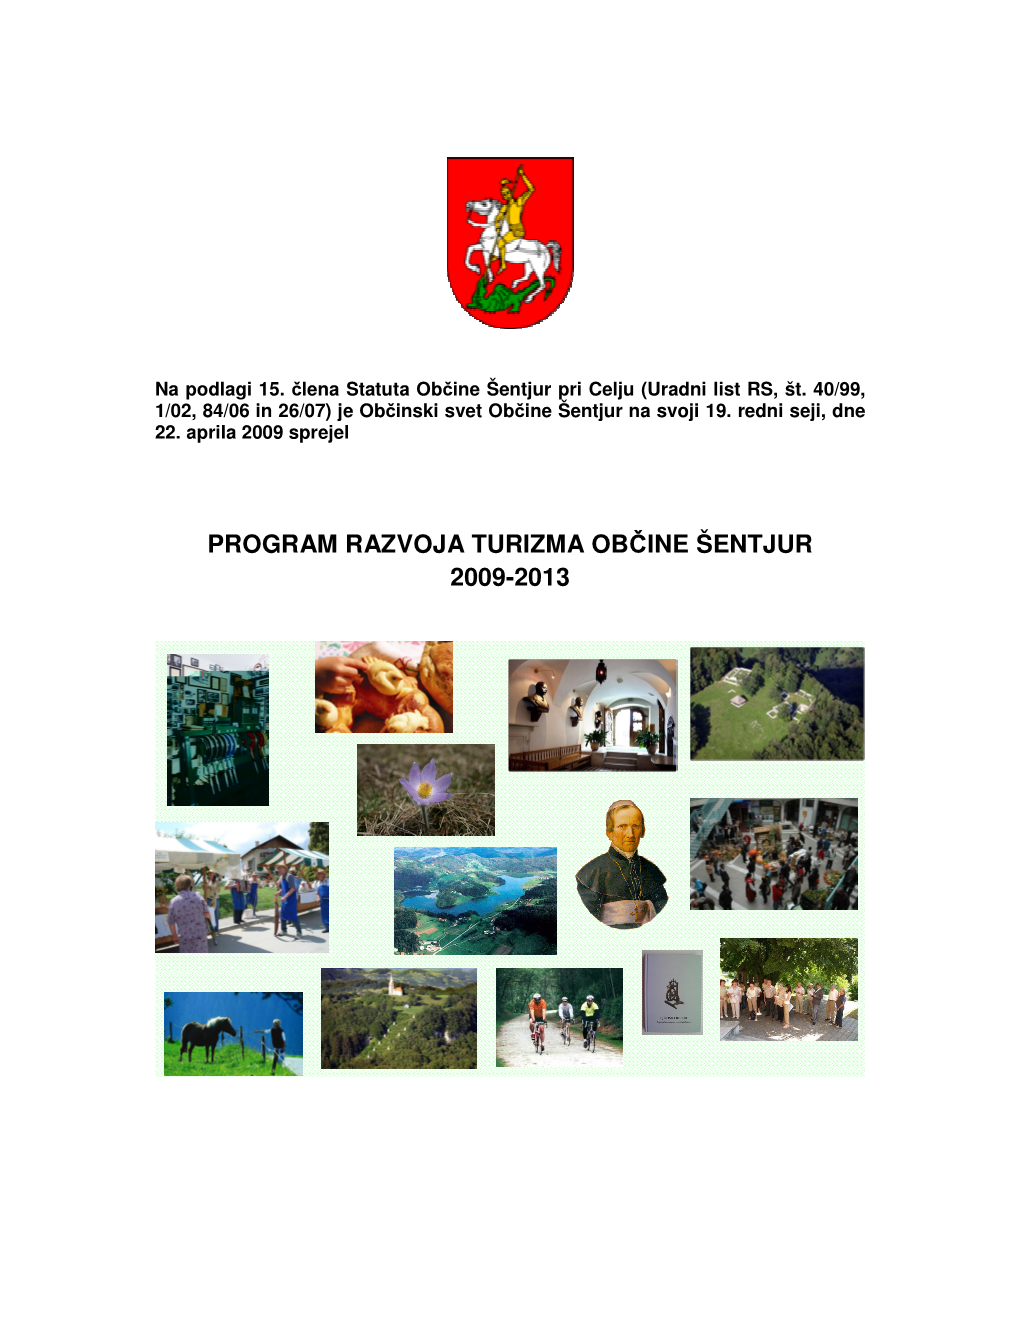 Program Razvoja Turizma Občine Šentjur 2009-2013